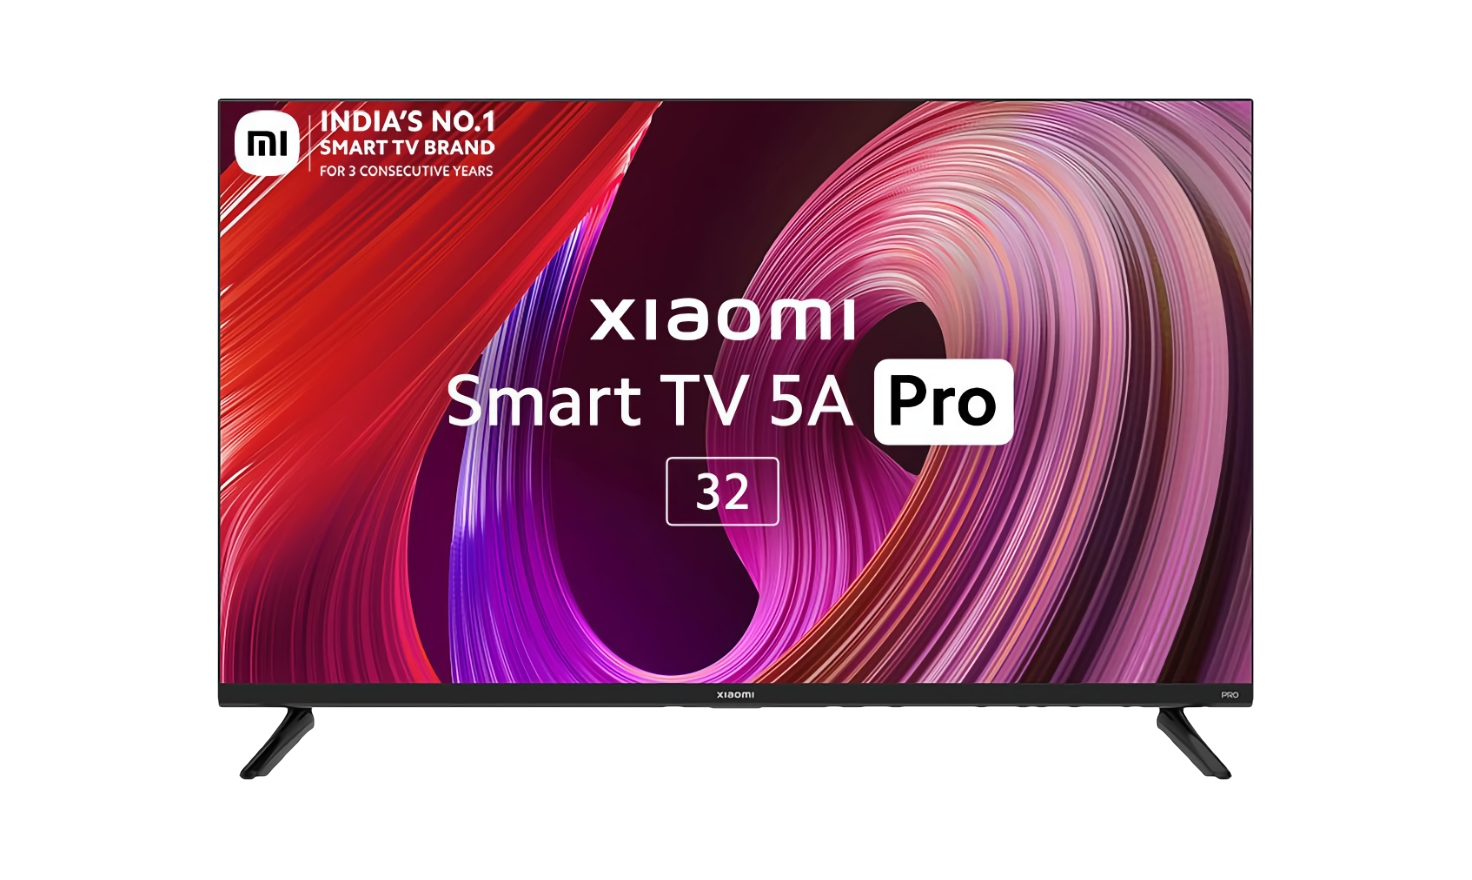 Xiaomi dévoile la Smart TV 5A Pro de 32 pouces avec des haut-parleurs de 24W, 1,5 Go de RAM et Android TV à bord pour 215 $.